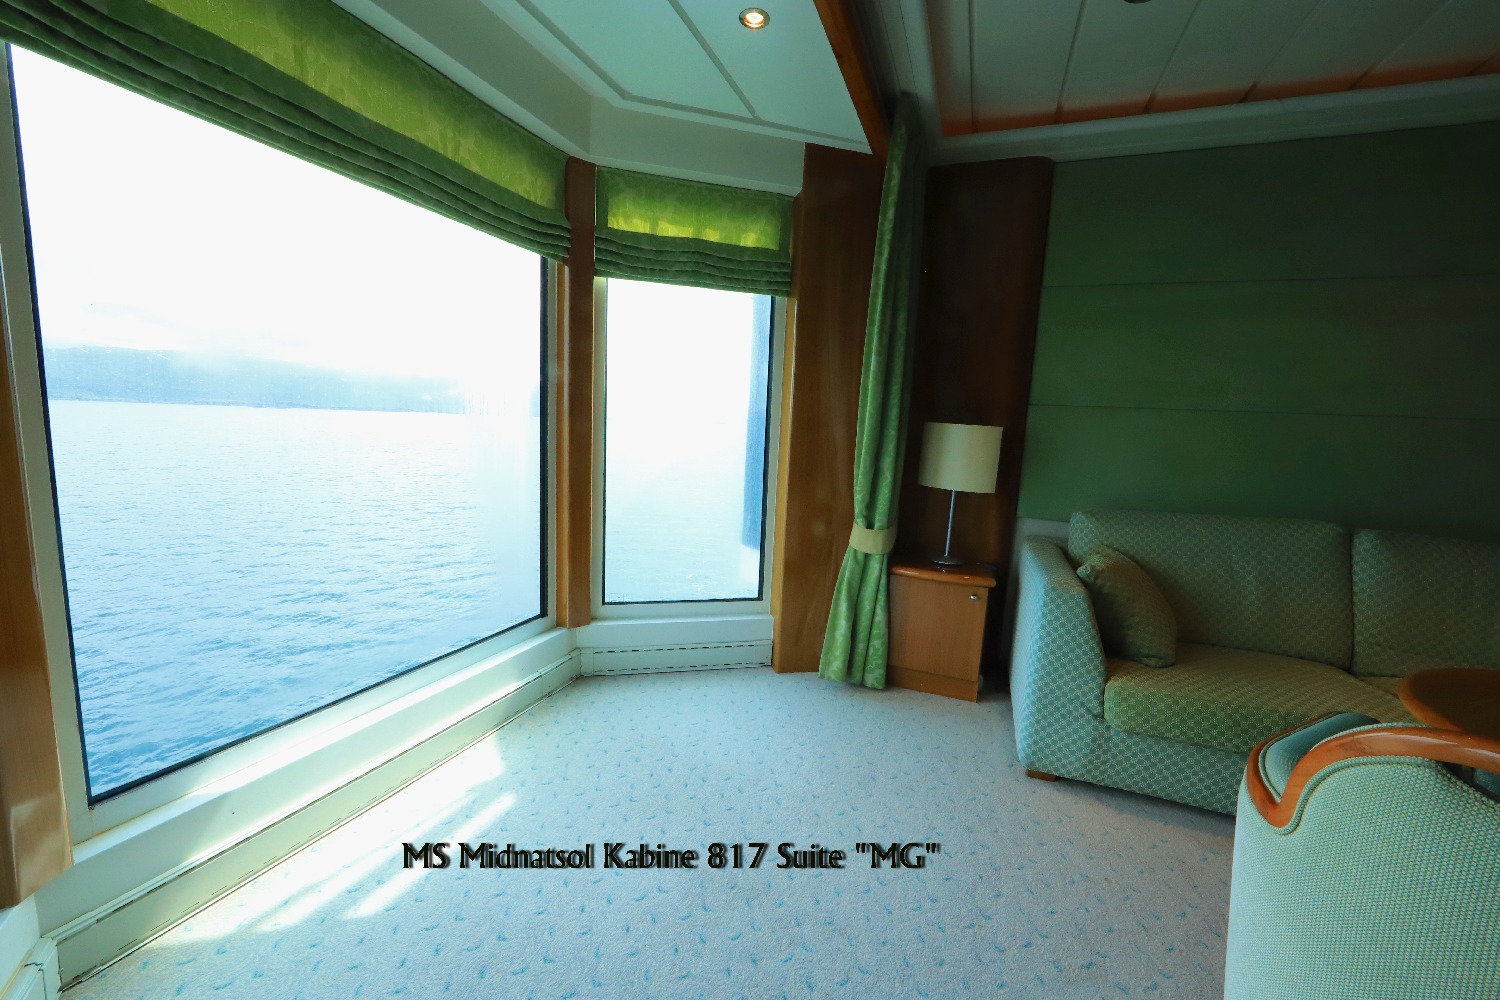 MS Midnatsol Suite 817 Beispiel für die MG Suiten Deck 8 ©Horst Reitz